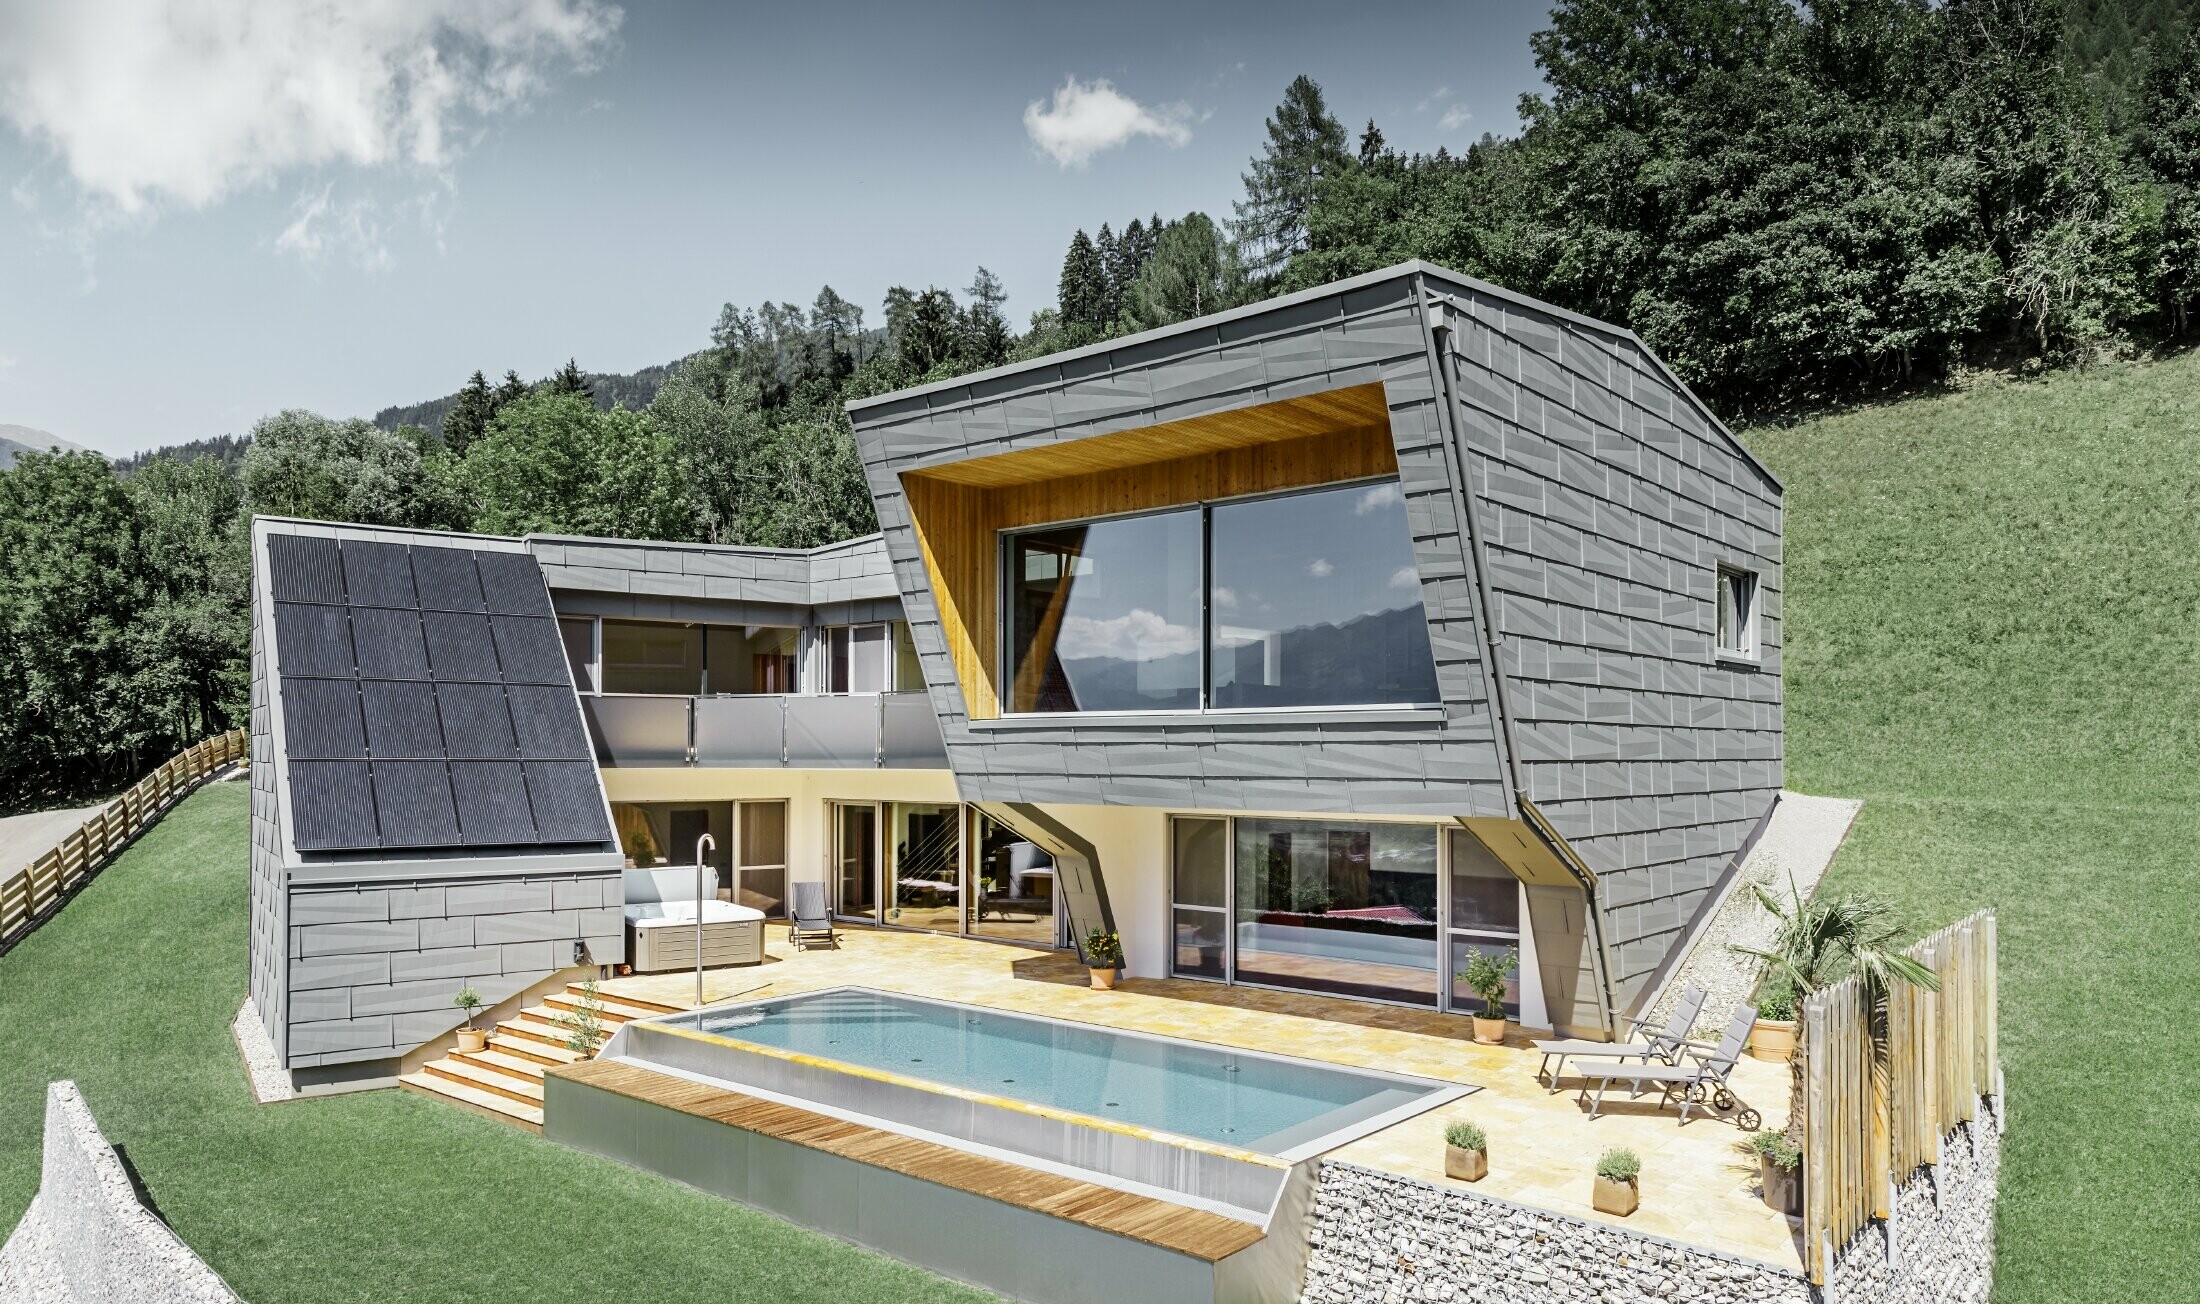 La maison individuelle moderne à flanc de coteau avec piscine a été recouverte de panneaux de façade FX.12 de PREFA couleur P.10 gris souris.